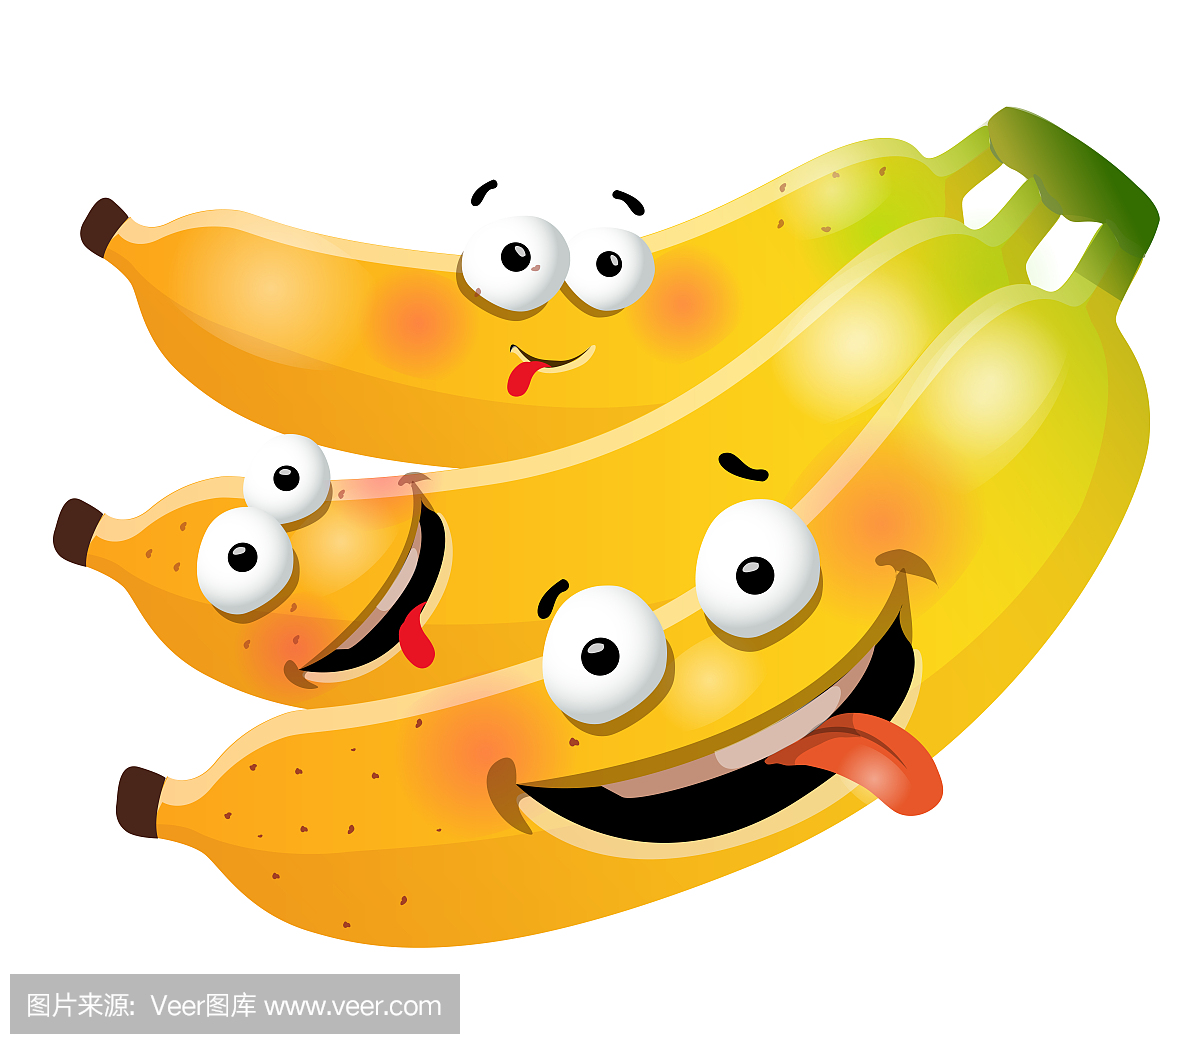 可爱卡通香蕉图片 _排行榜大全